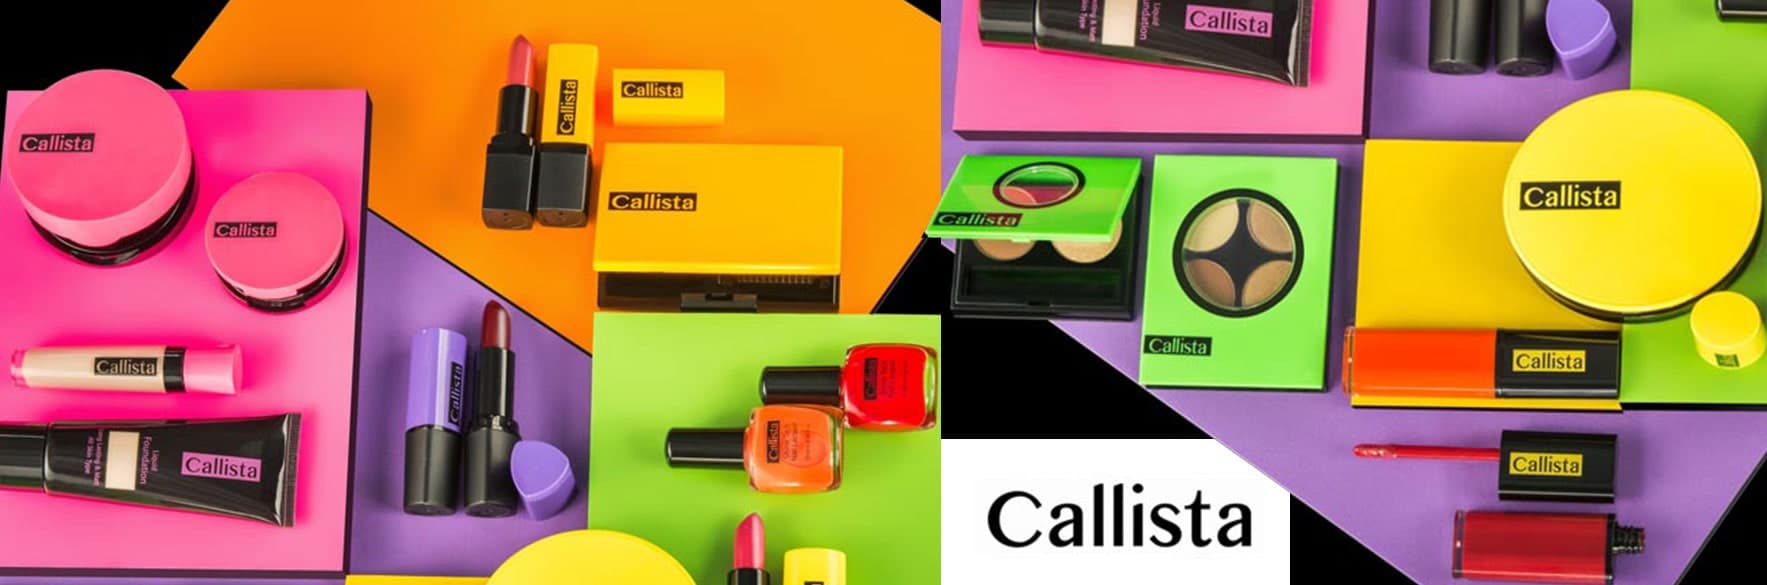 محصولات کالیستا CALLISTA آرایشی و بهداشتی